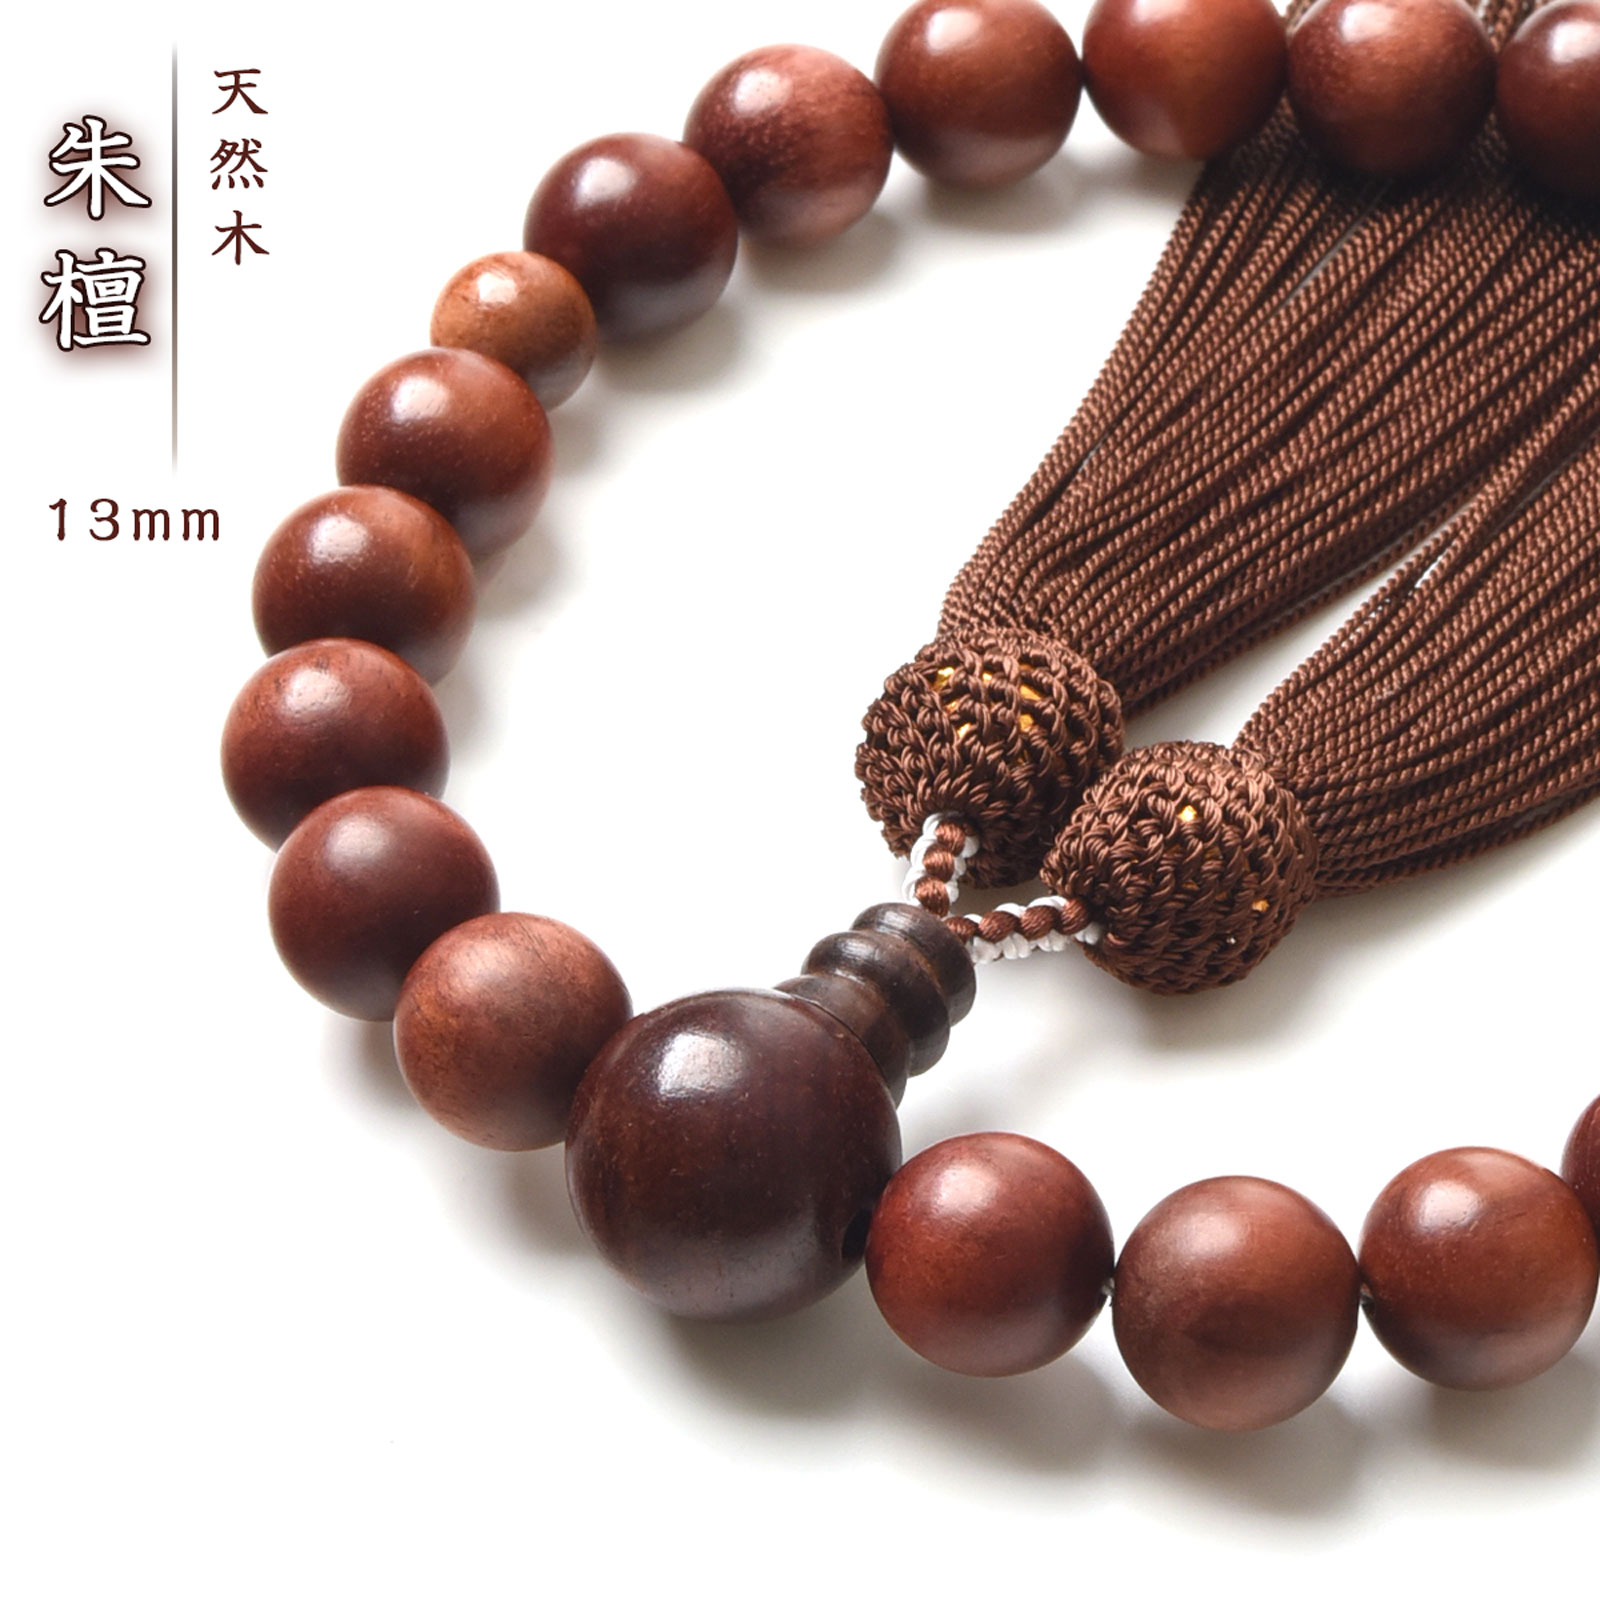 京都からの発送、天然素材使用し職人丁寧に作った数珠で、すべての宗派で使えます。  数珠 男性用 朱檀 数珠入れ 特典付 13mm 念珠 天然素材 送料無料 juzu02